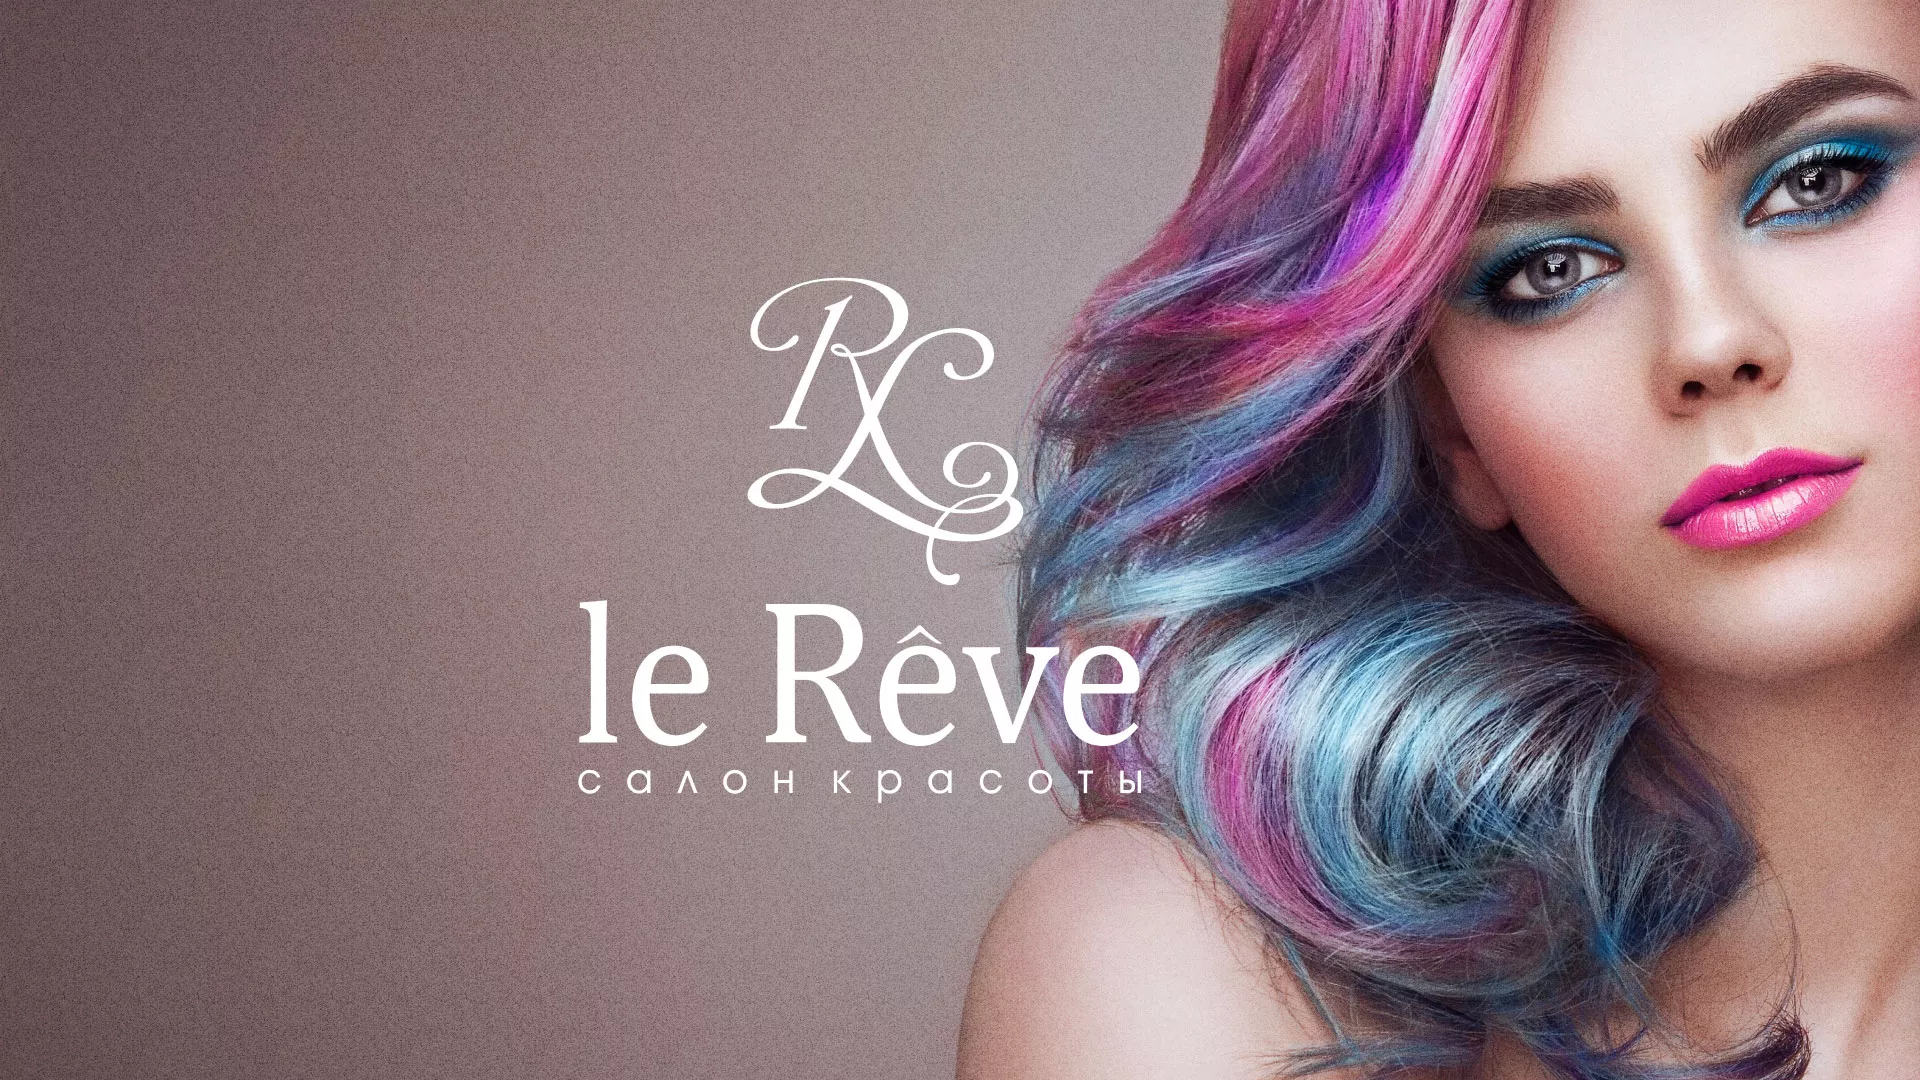 Создание сайта для салона красоты «Le Reve» в Стародубе